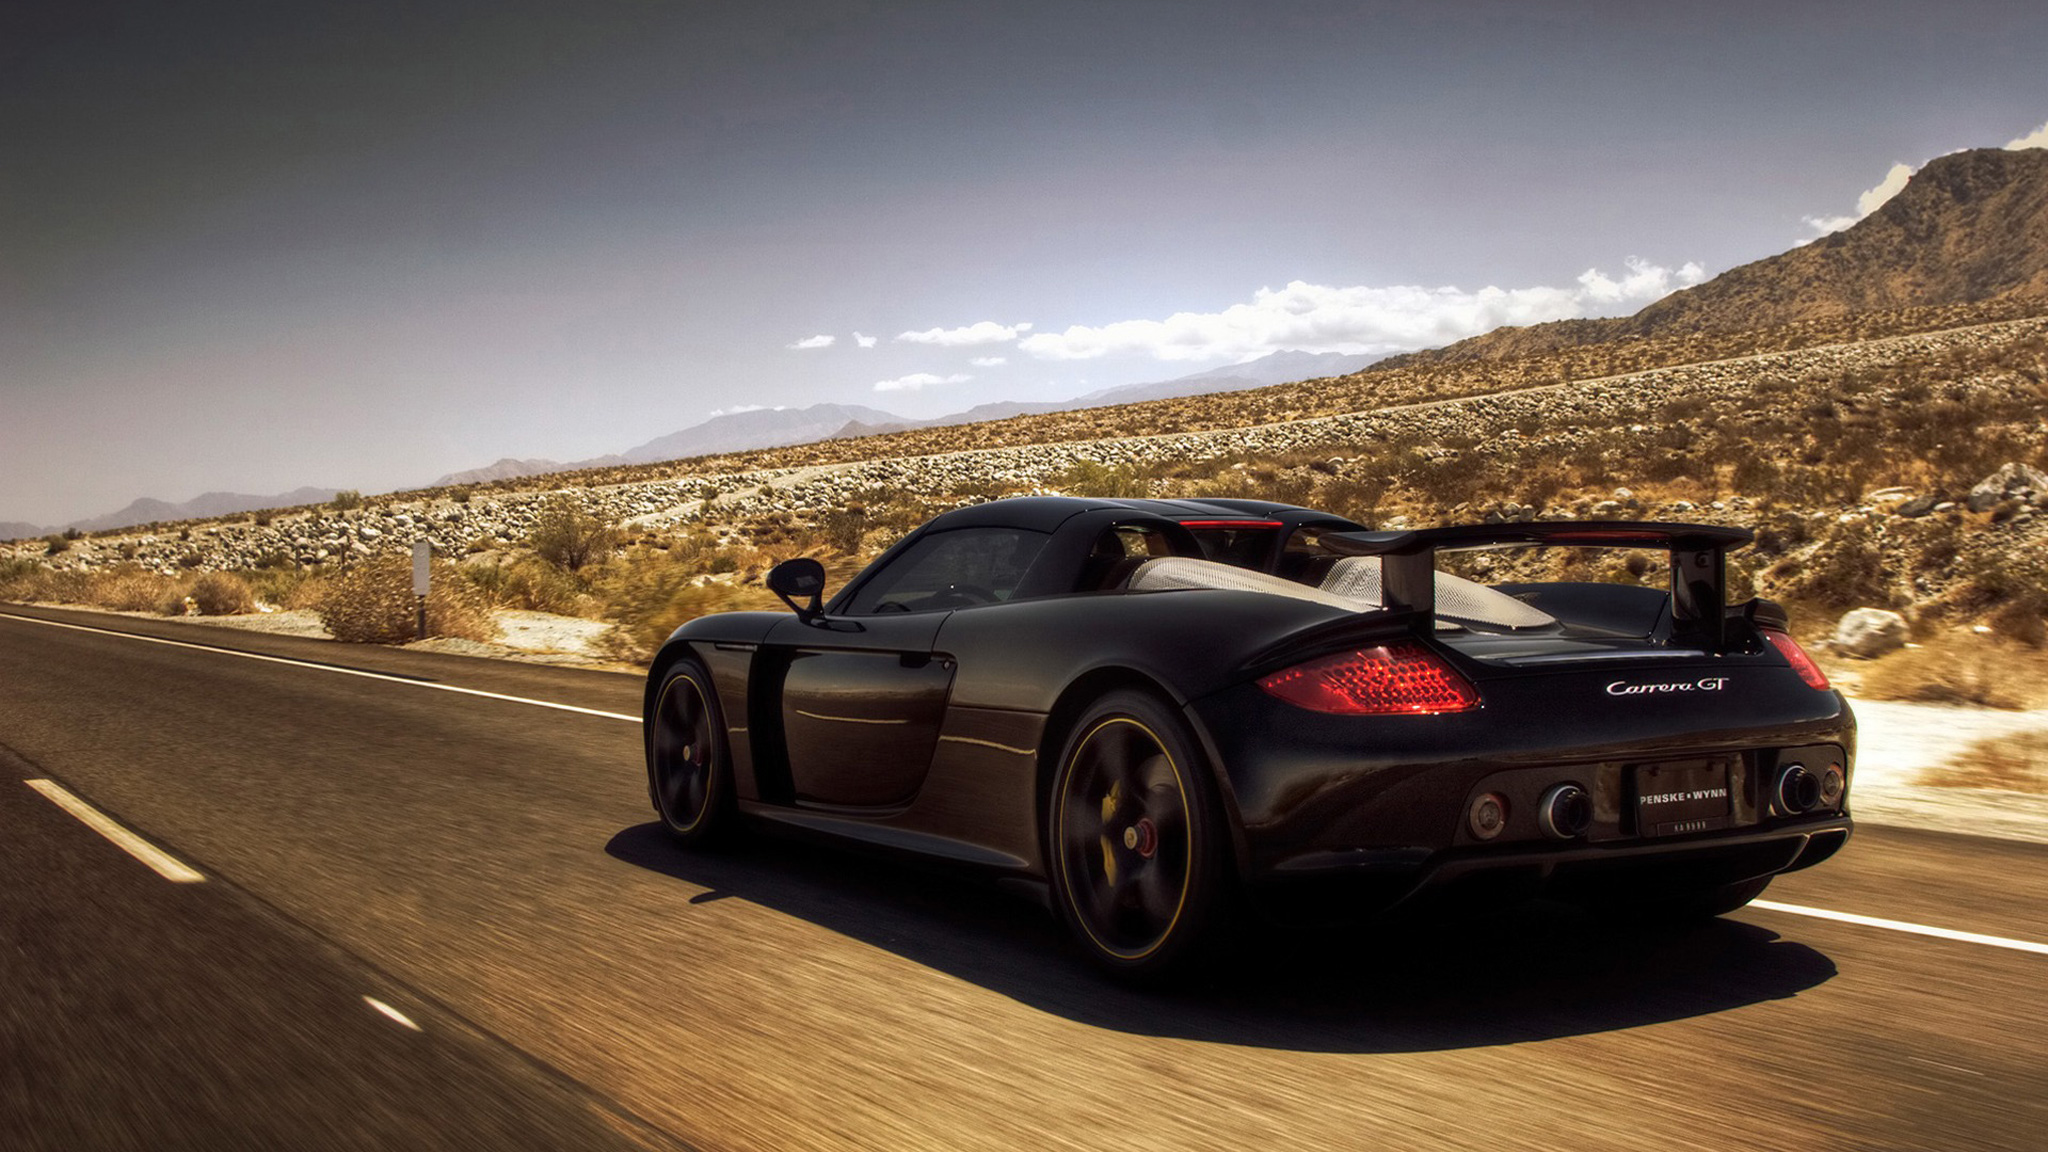 cars, roads, Porsche Carrera GT - desktop wallpaper